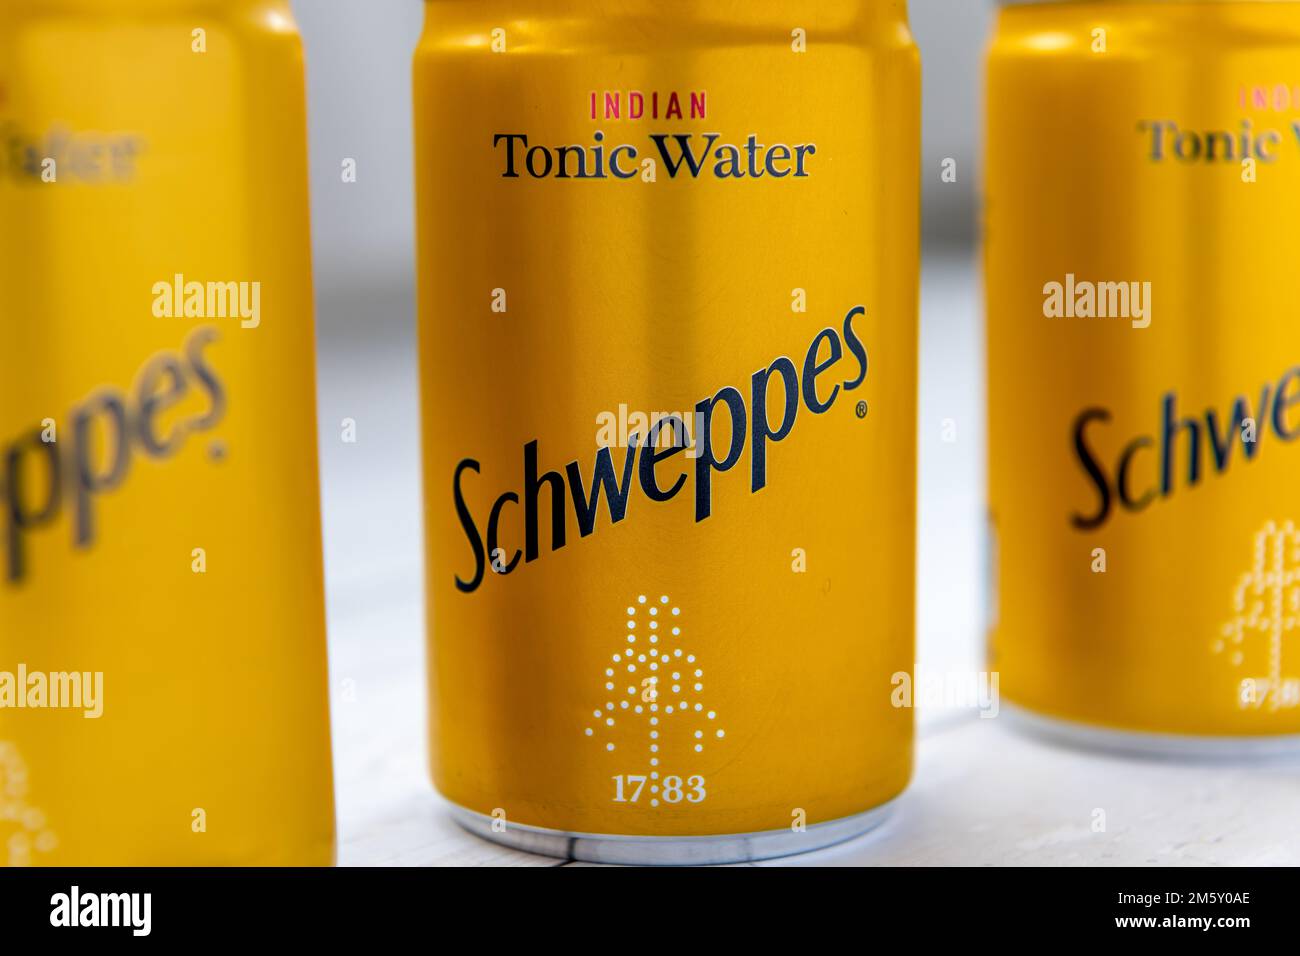 Londra. UK- 12.31.2022. Lattine di acqua tonica indiana di Schweppes in una fila. Foto Stock